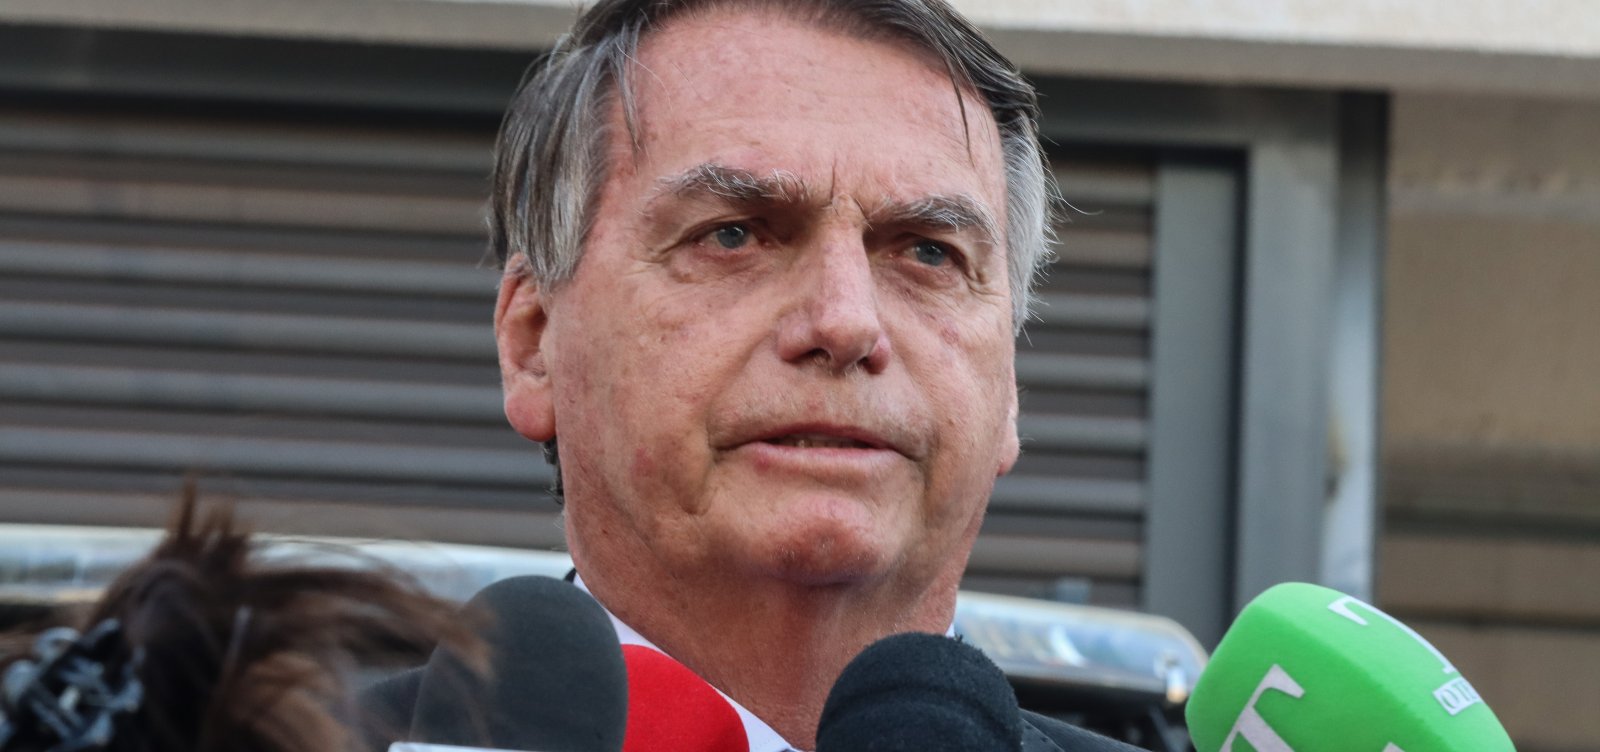 Militares responsabilizam Bolsonaro pela tentativa de golpe de estado em investigação